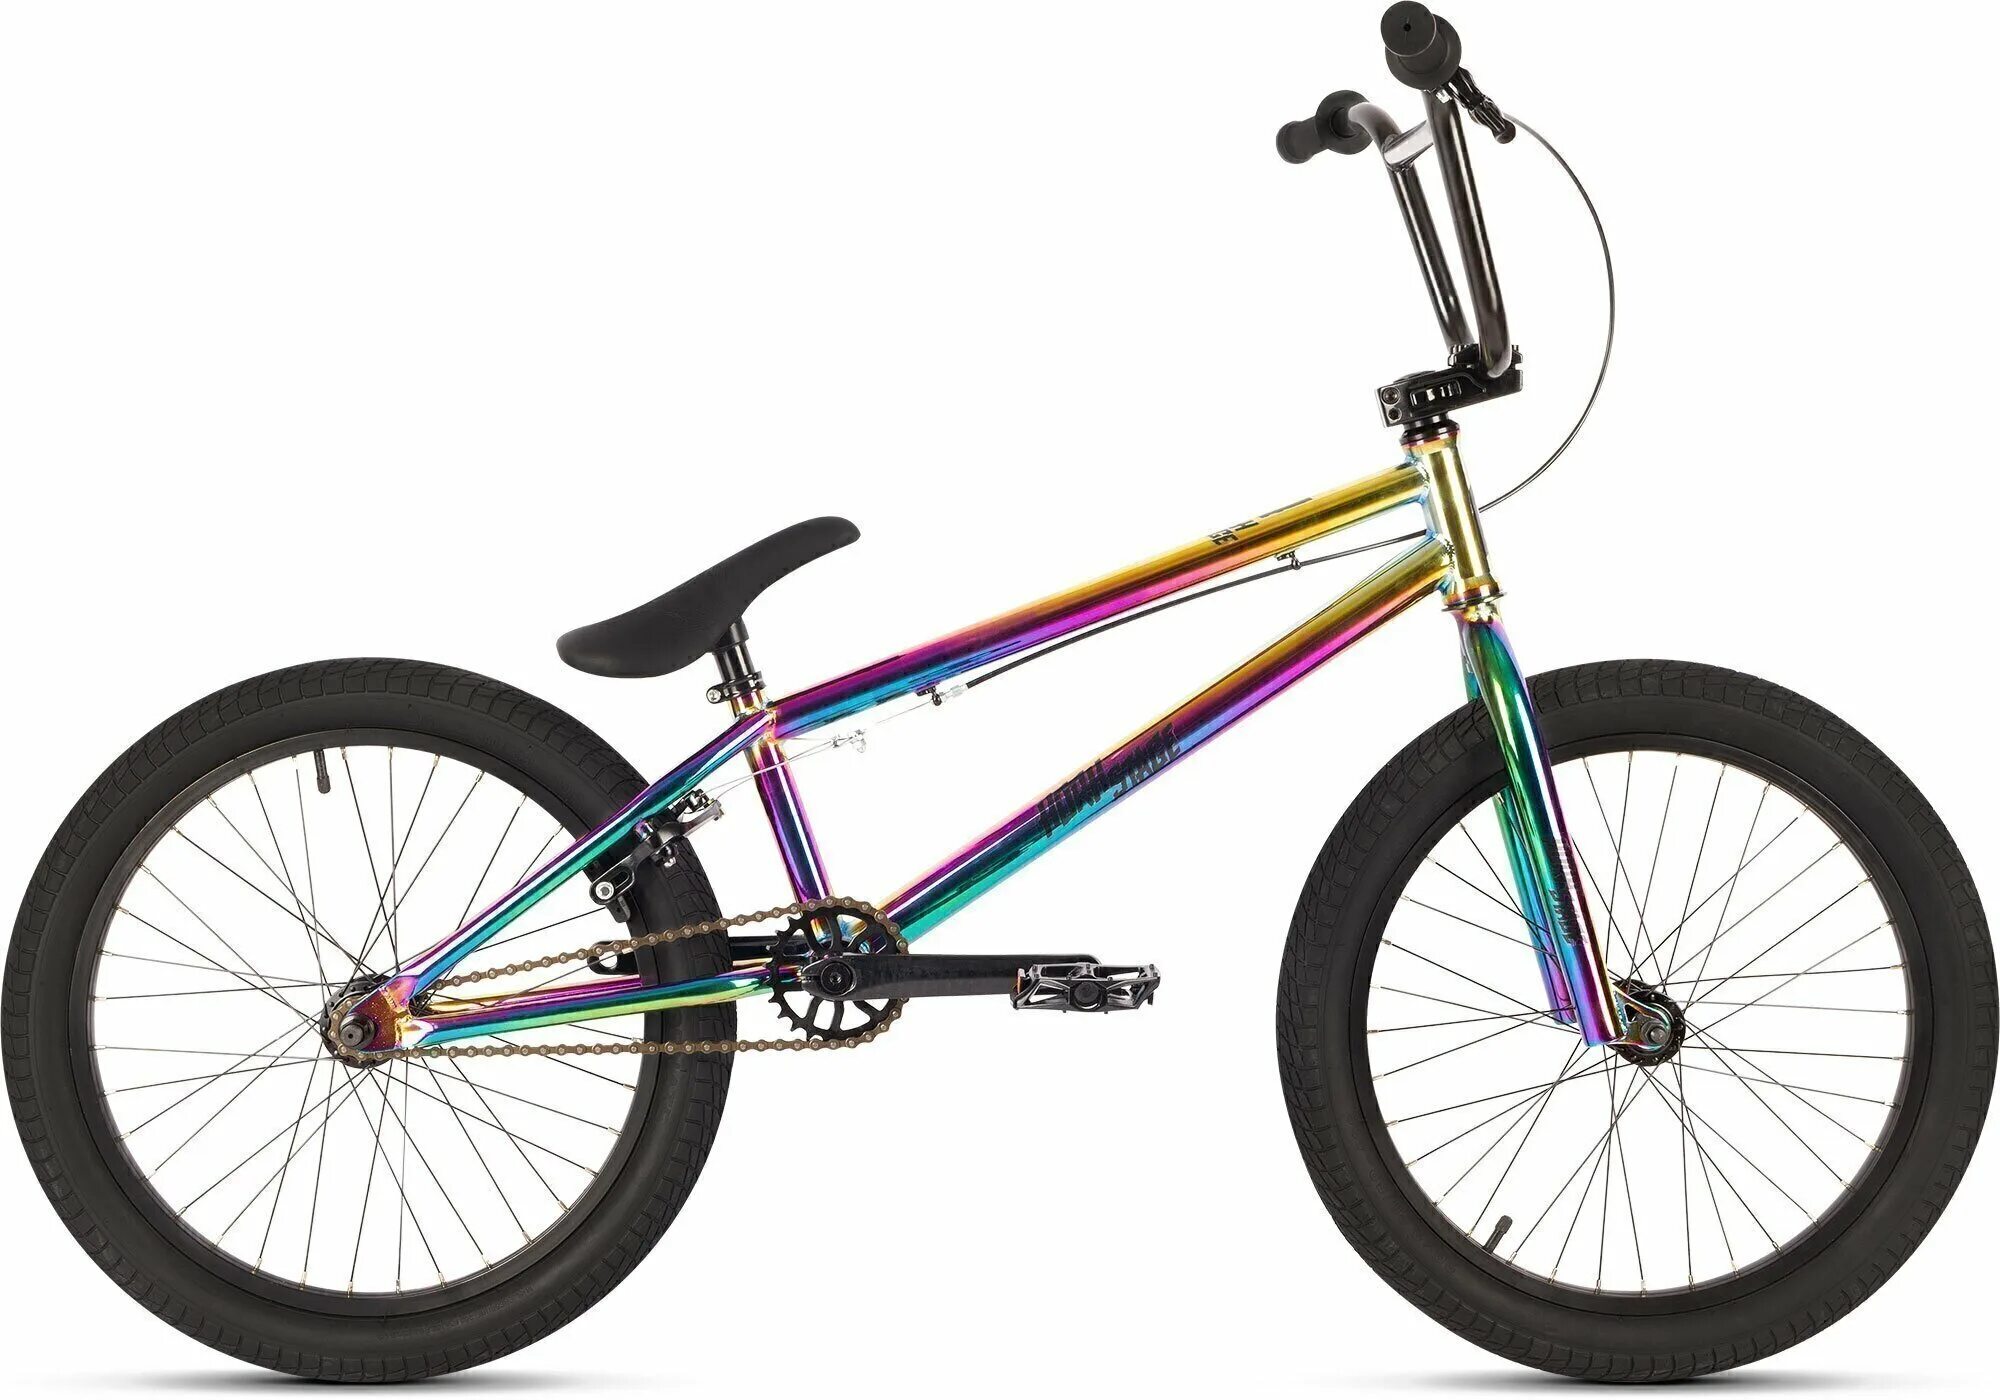 Велосипед horh Stage 20" (2020) бензин. Horh Stage бмх велосипед. BMX велосипед 20-200-29, 20, 2020. Трюковой велосипед BMX градиент. Купить велосипед в омске недорого